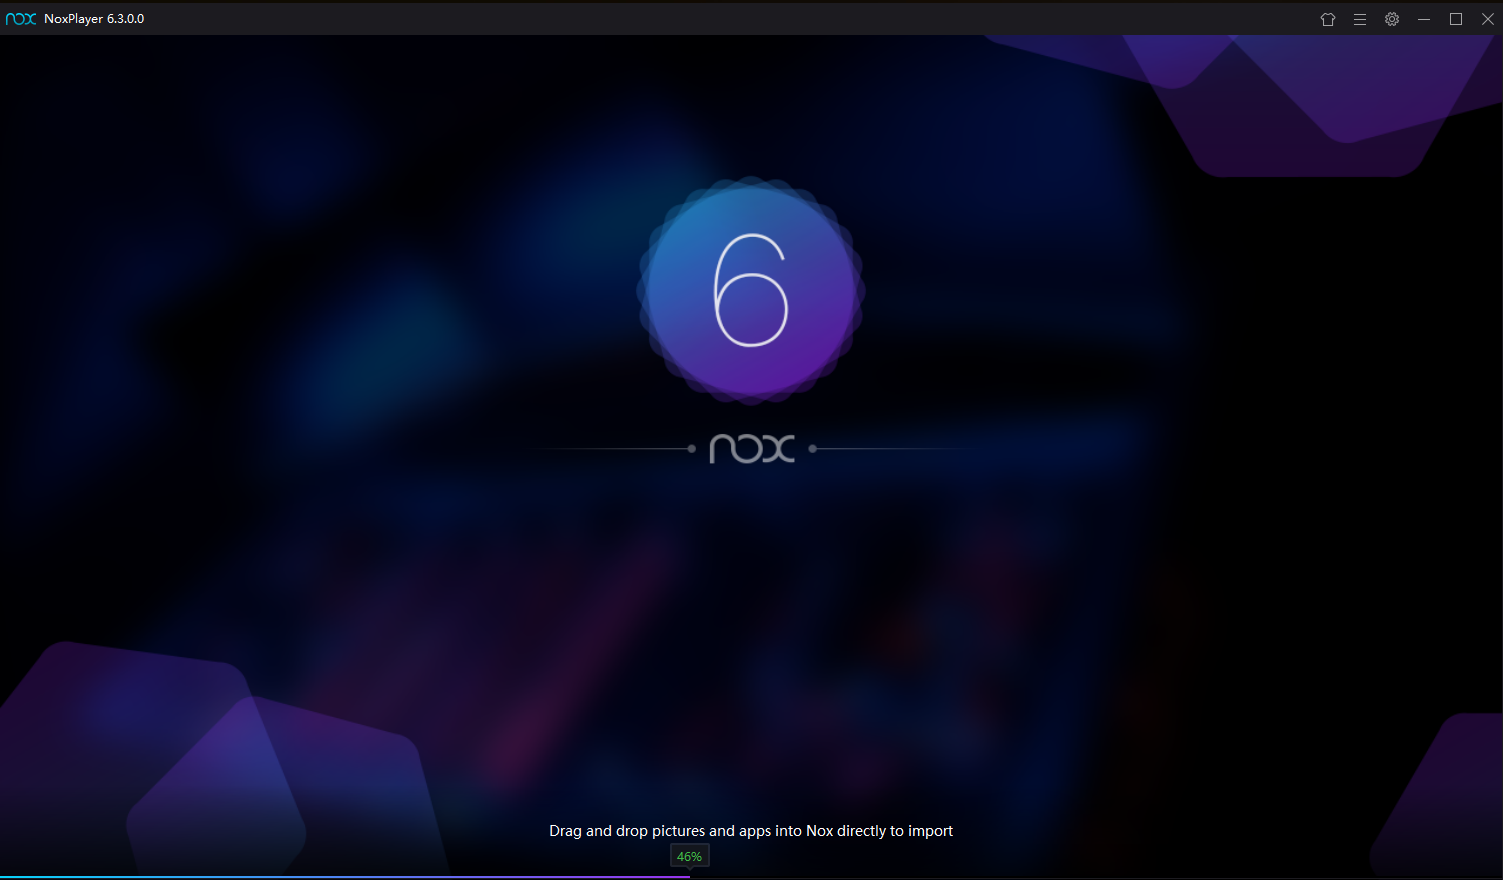 Download nox player terbaru